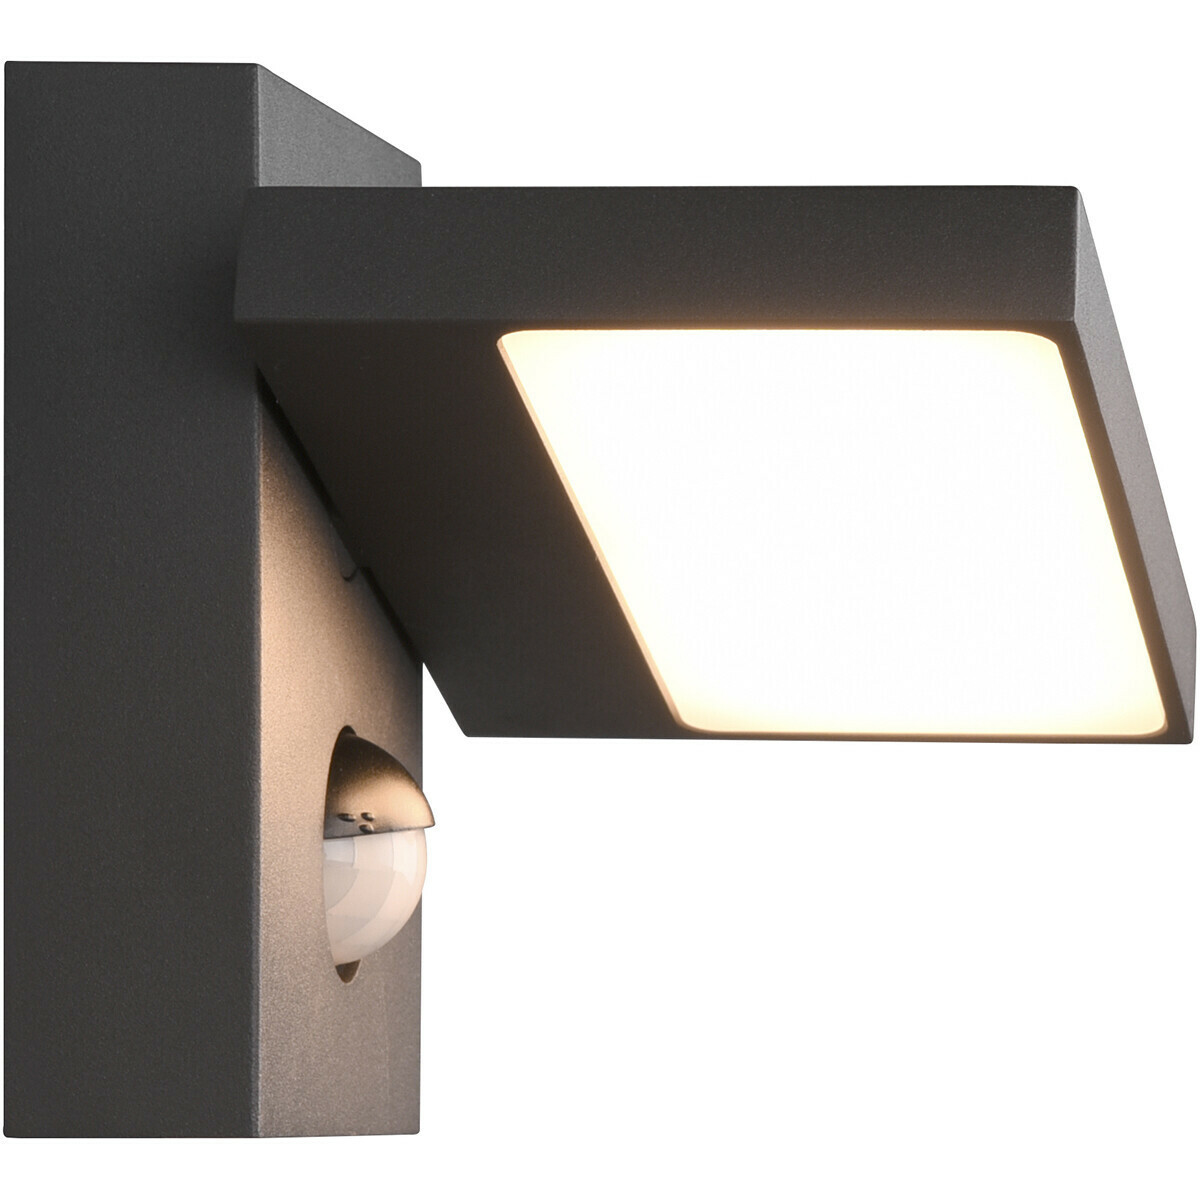 LED Gartenbeleuchtung mit Bewegungsmelder - Wand-Außenleuchte - Trion Ihson  - 8W - Warmweiß 3000K - Drehbar - Quadrat - Mattanthrazit - Aluminium | BES  LED